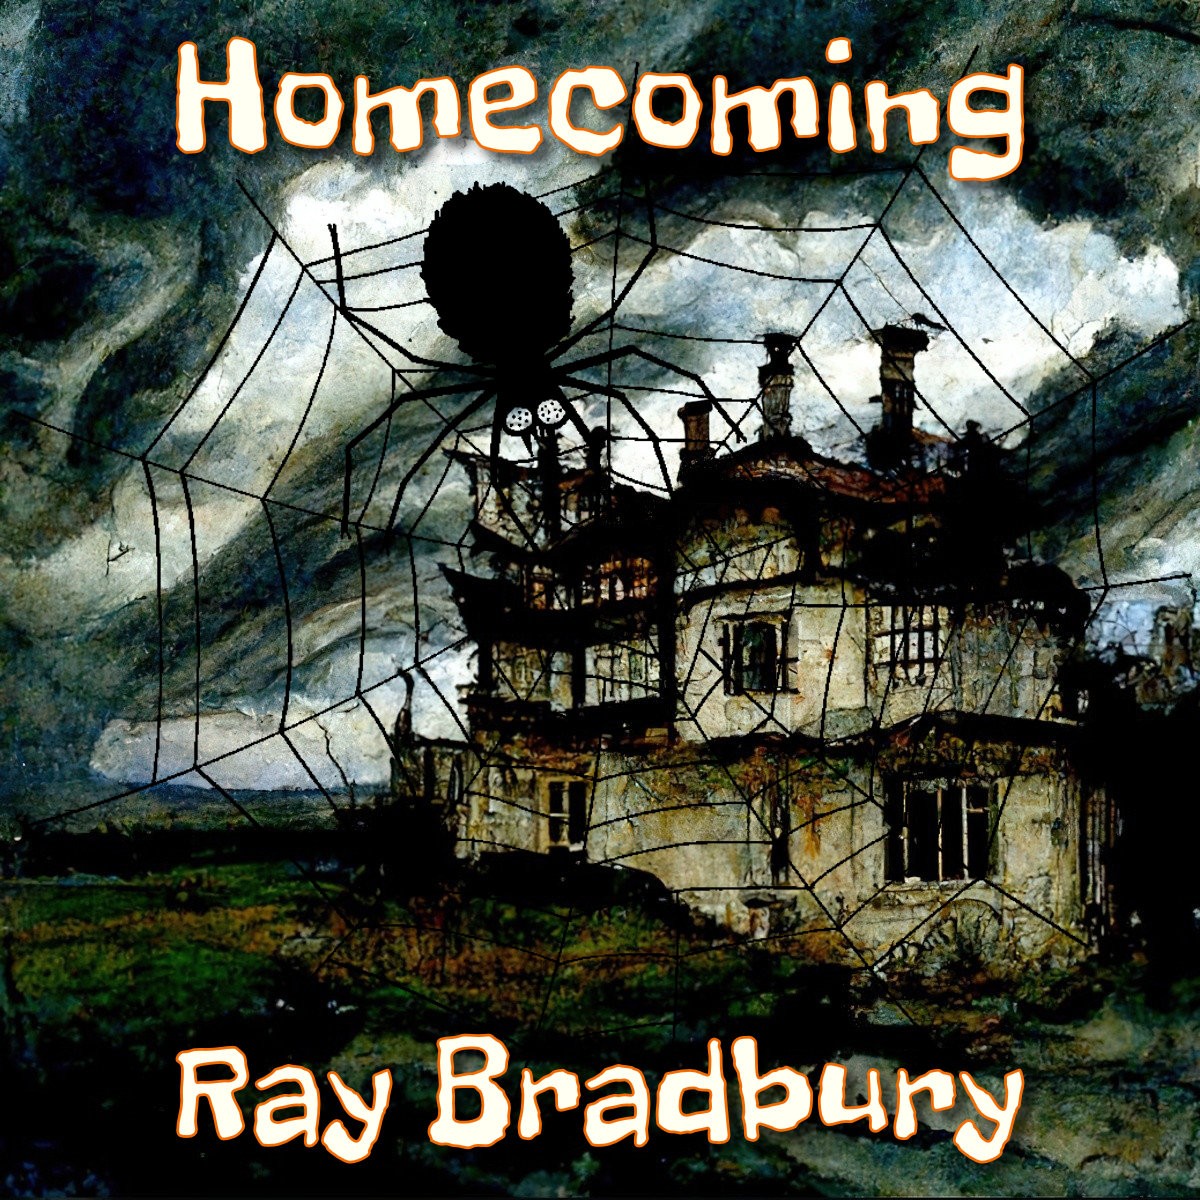 Homecoming by Ray Bradbury Short Story Analysis